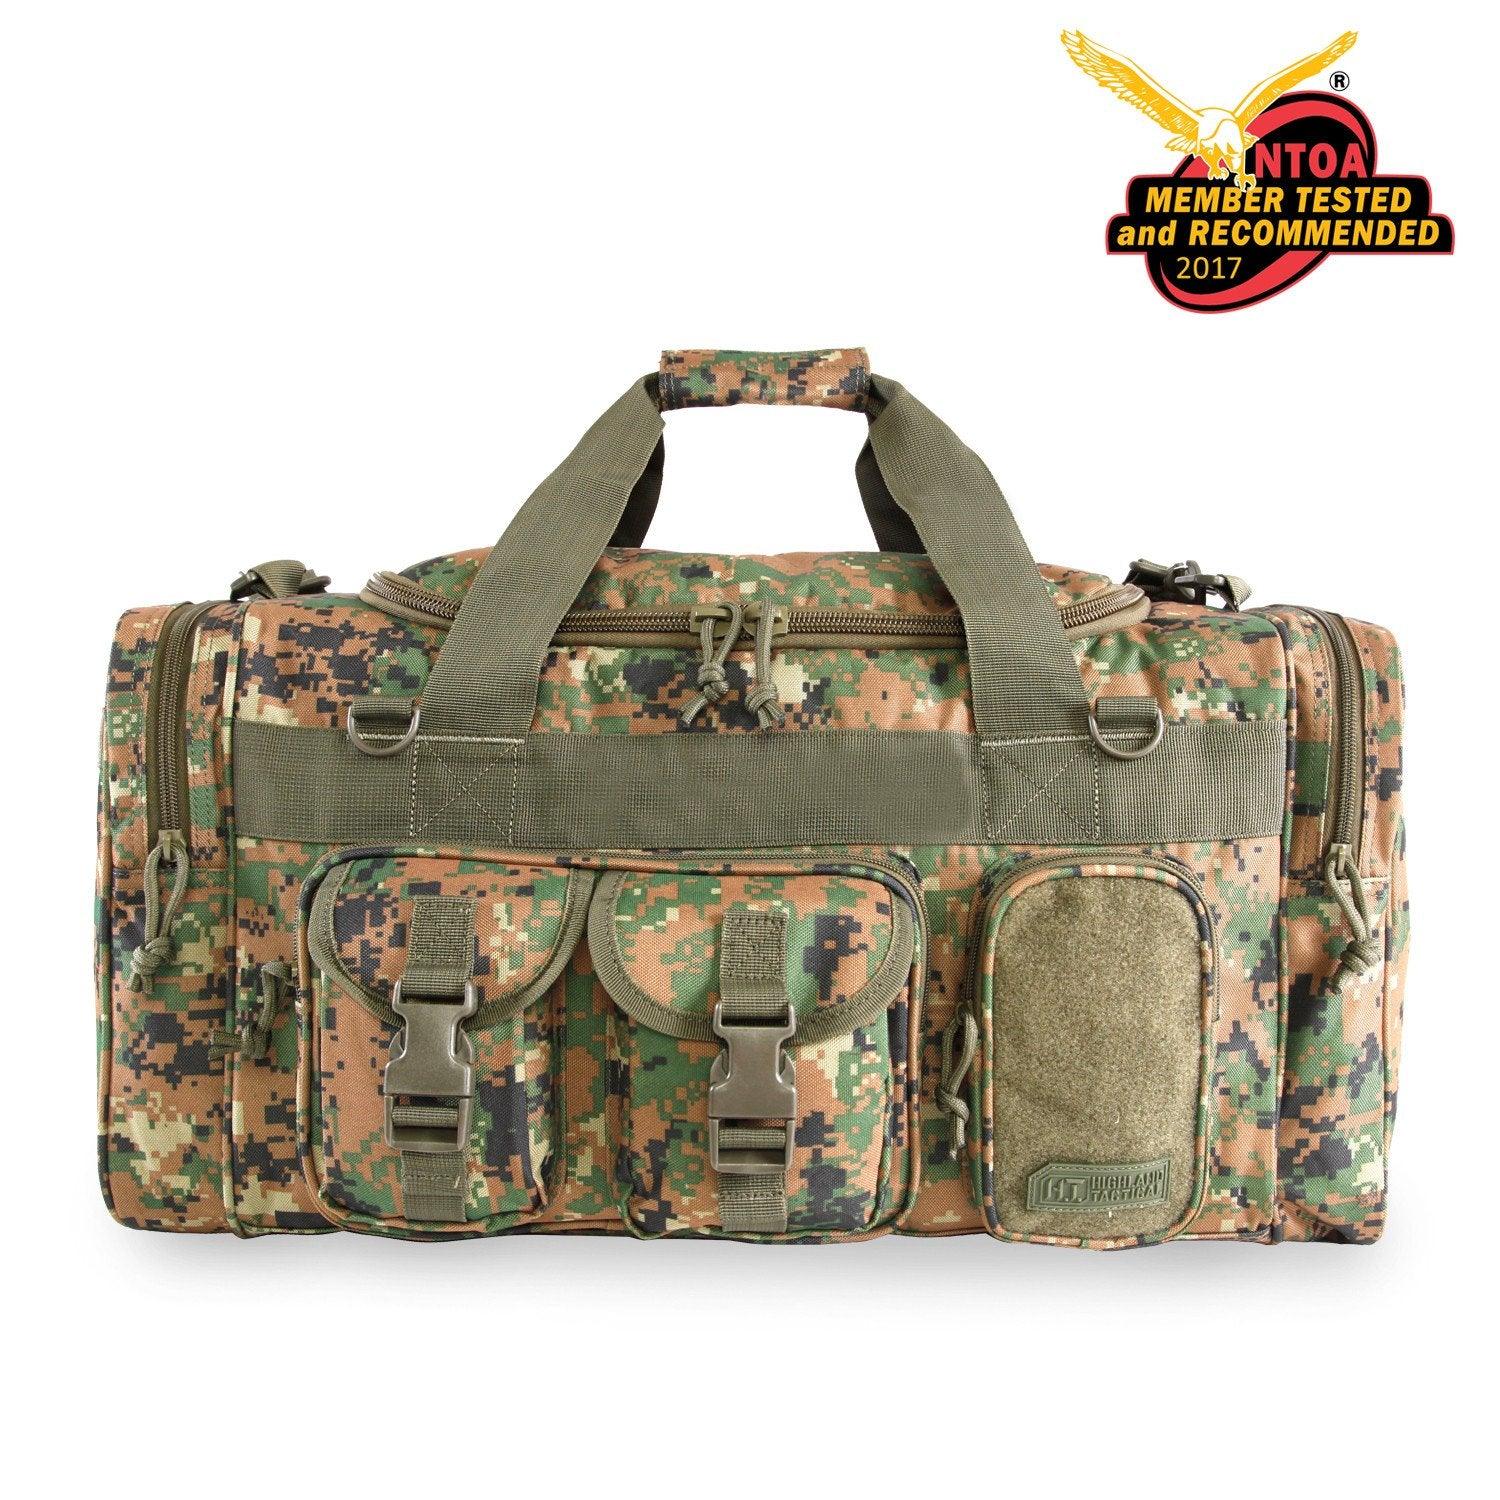 Ranger Duffel Bag, Duffle Bags, Range Bags, Gun Range Bag